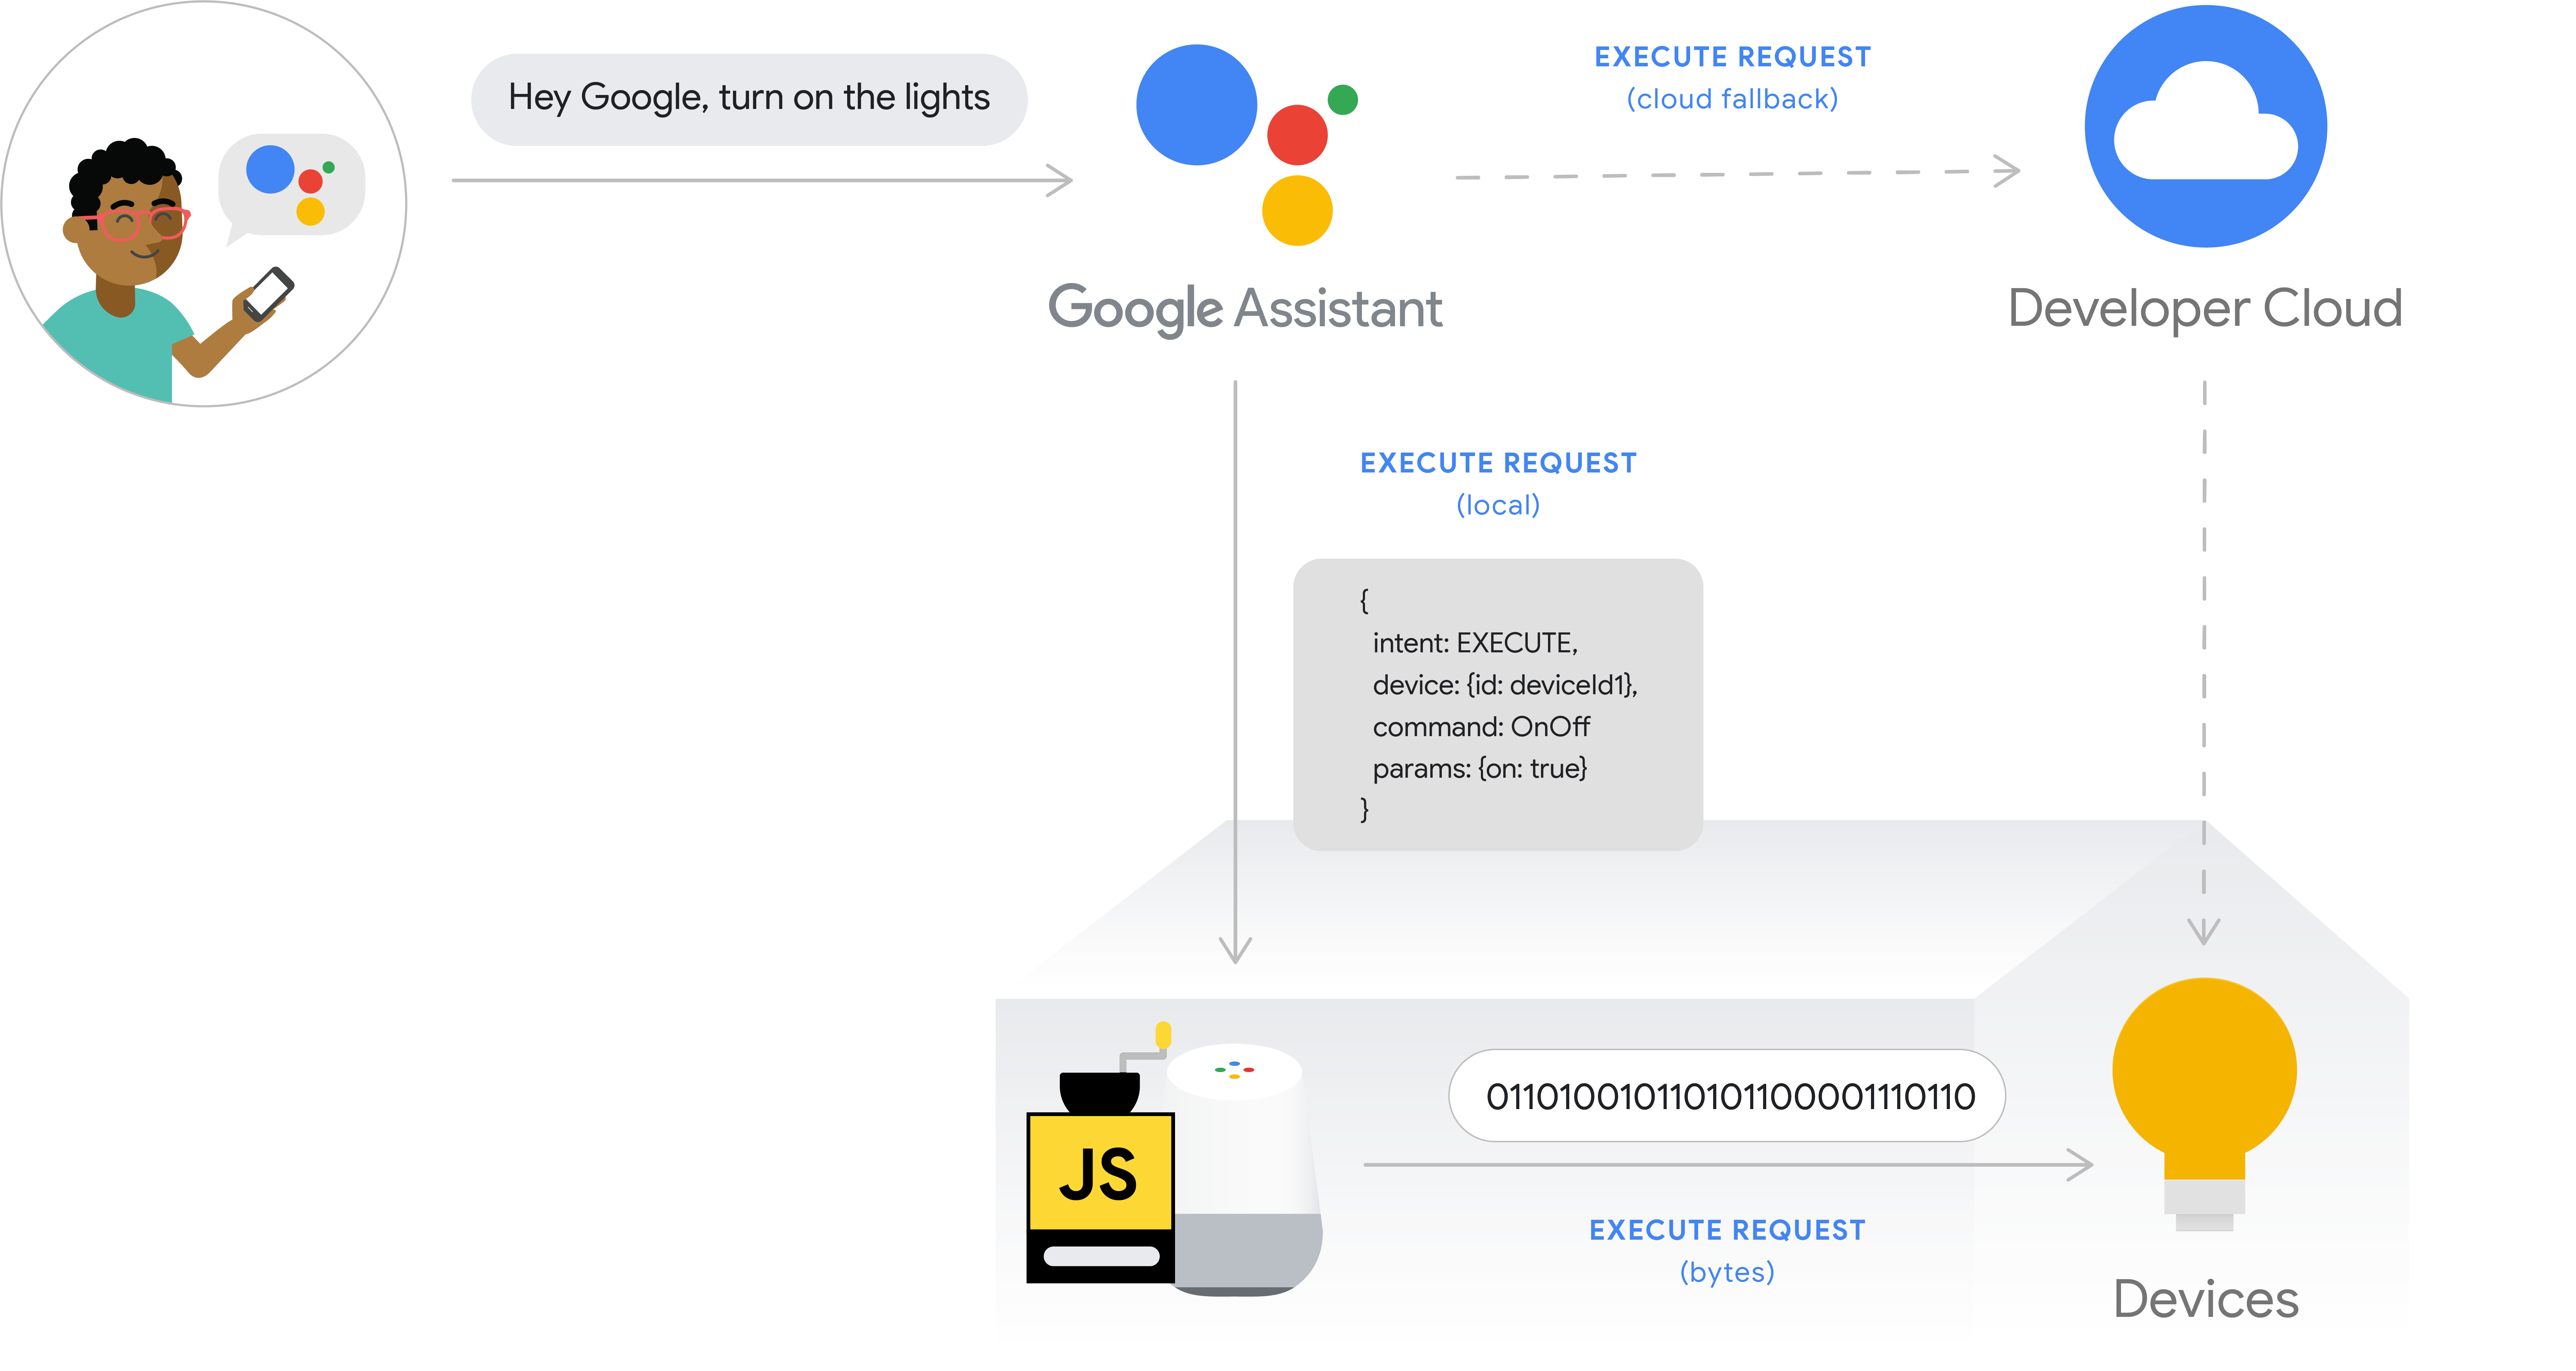 รูปนี้แสดงโฟลว์การดําเนินการสําหรับการดําเนินการตามคําสั่งซื้อในพื้นที่ เส้นทางการดําเนินการจะบันทึกความตั้งใจของผู้ใช้จากโทรศัพท์ด้วย Google Assistant จากนั้น Google Cloud จะประมวลผลความตั้งใจของผู้ใช้จากนั้น Google Home จะสั่งงานจากภายในอุปกรณ์ Google Home โดยตรงและคําสั่งจะออกไปยังฮับอุปกรณ์โดยตรงหรือไปยังอุปกรณ์โดยตรง ระบบคลาวด์ของนักพัฒนาซอฟต์แวร์พร้อมใช้งานเป็นระบบคลาวด์สํารอง